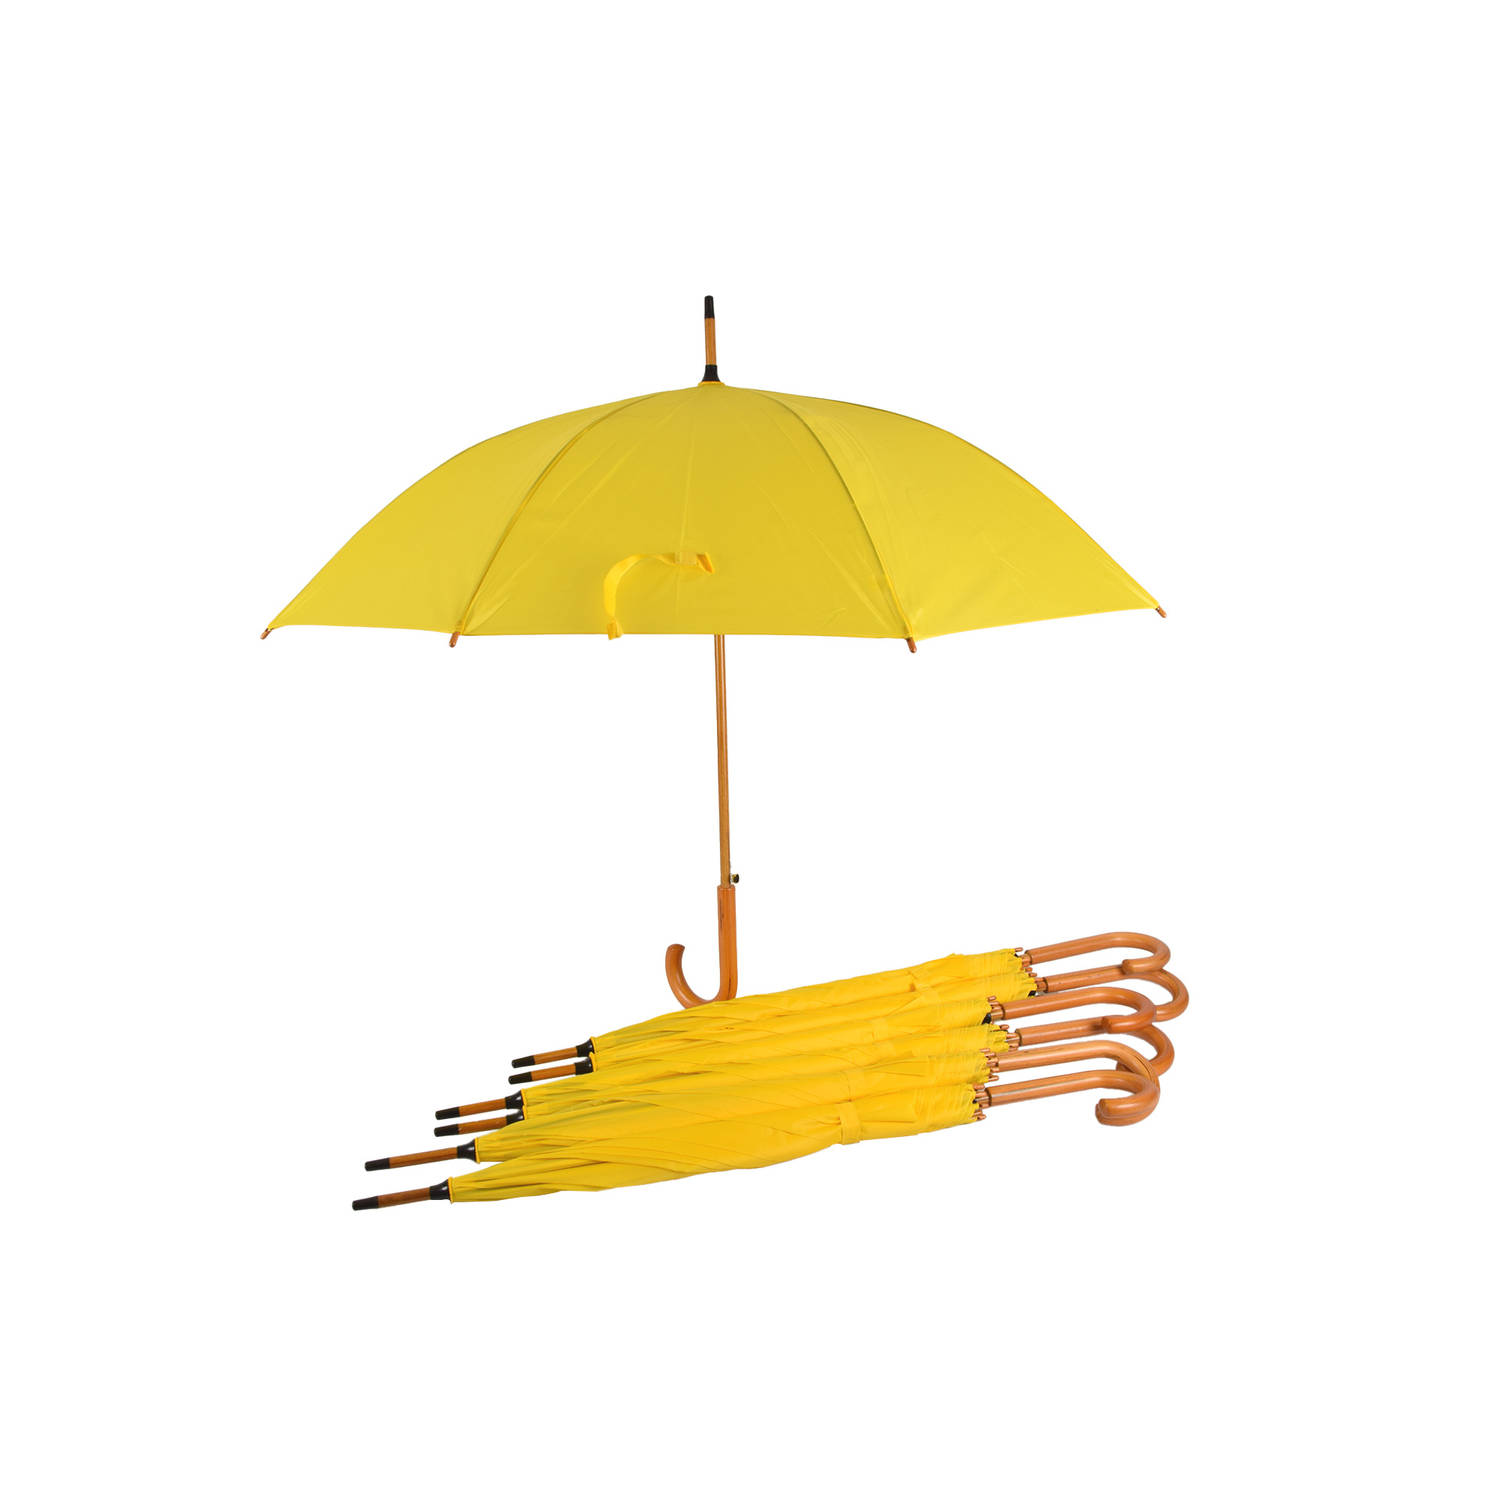 Set van 7 Gele Automatische Paraplu's 102cm | Waterdicht & Windproof | Ideaal voor Outdoor & Perfect voor de Zon